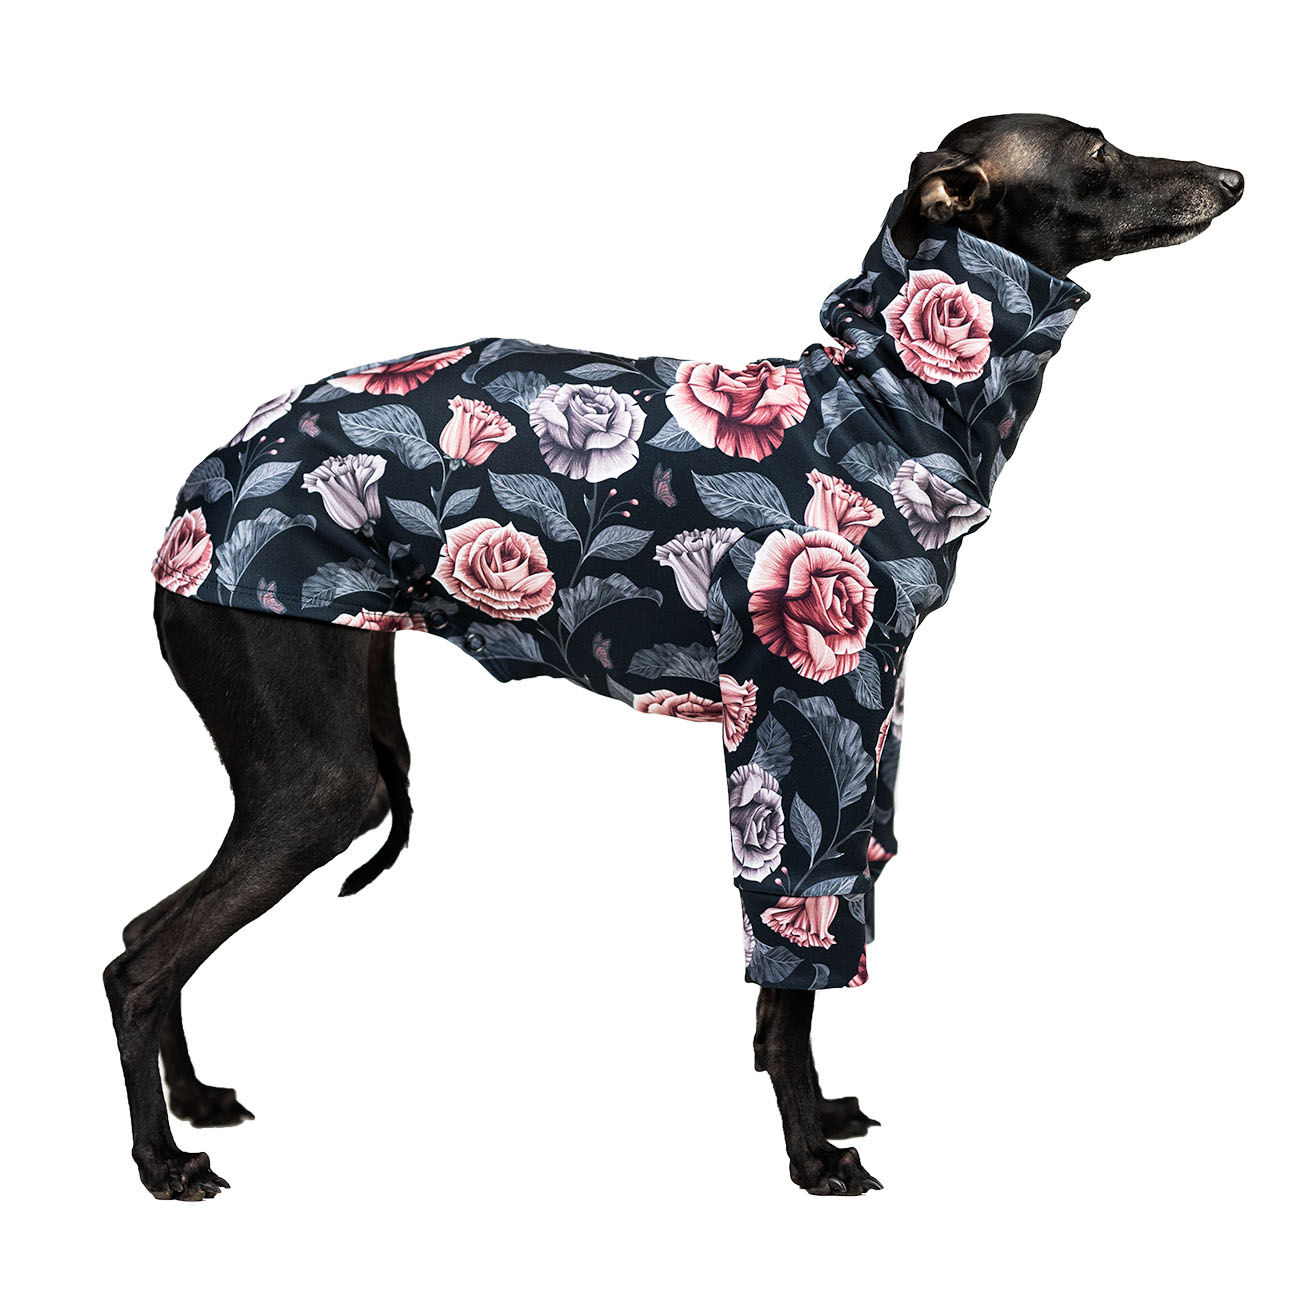 Italian greyhound clothing ROSE PASTEL - Wear.Chartbeat image 2